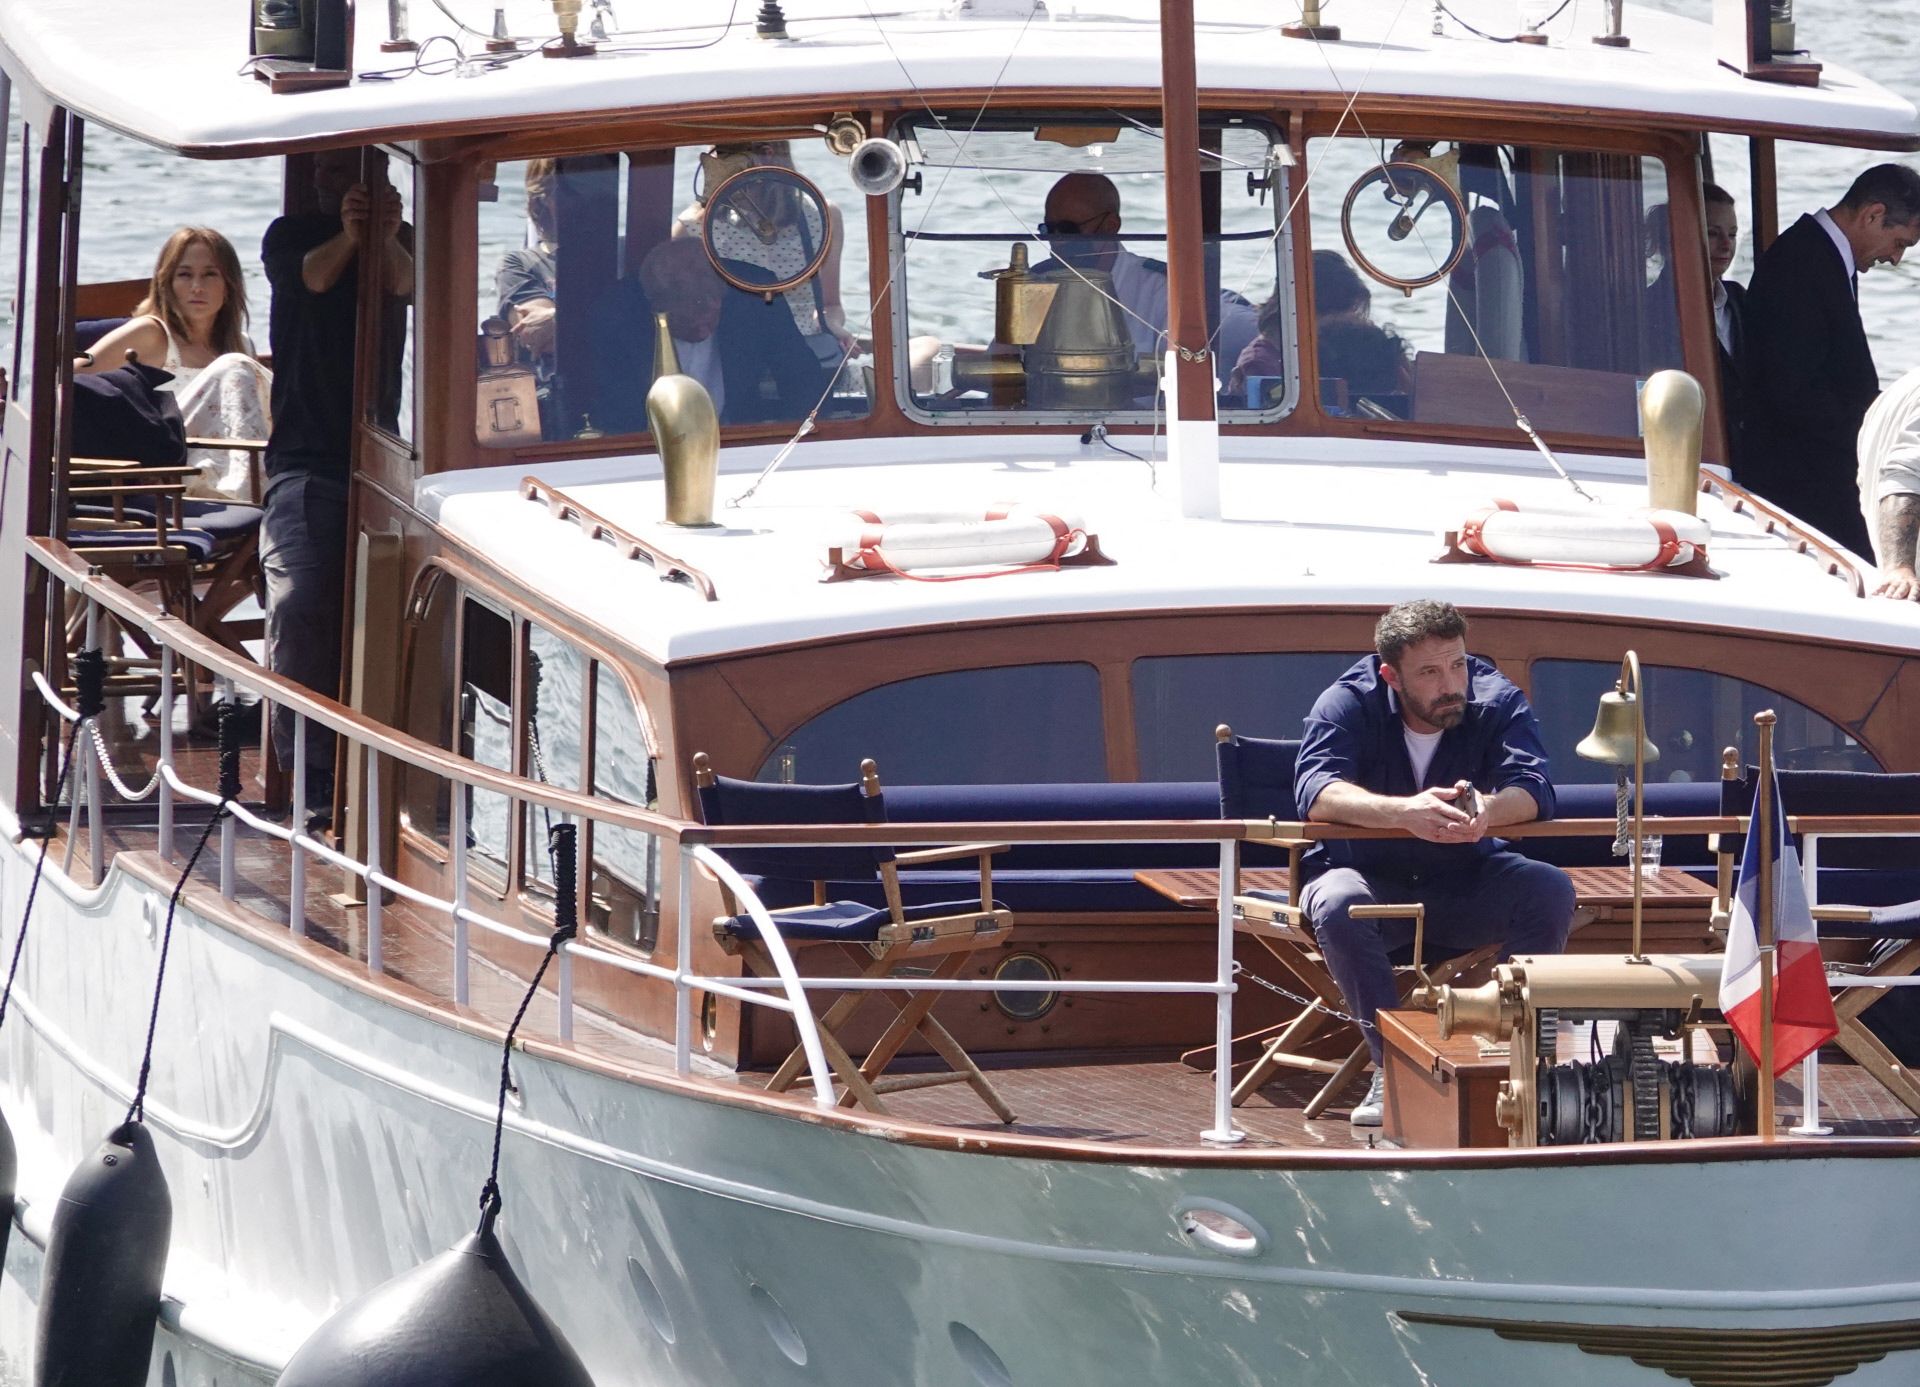 El actor, en la proa del barco, donde se qued dormido, y la cantante, al fondo, junto a amigos y familiares.